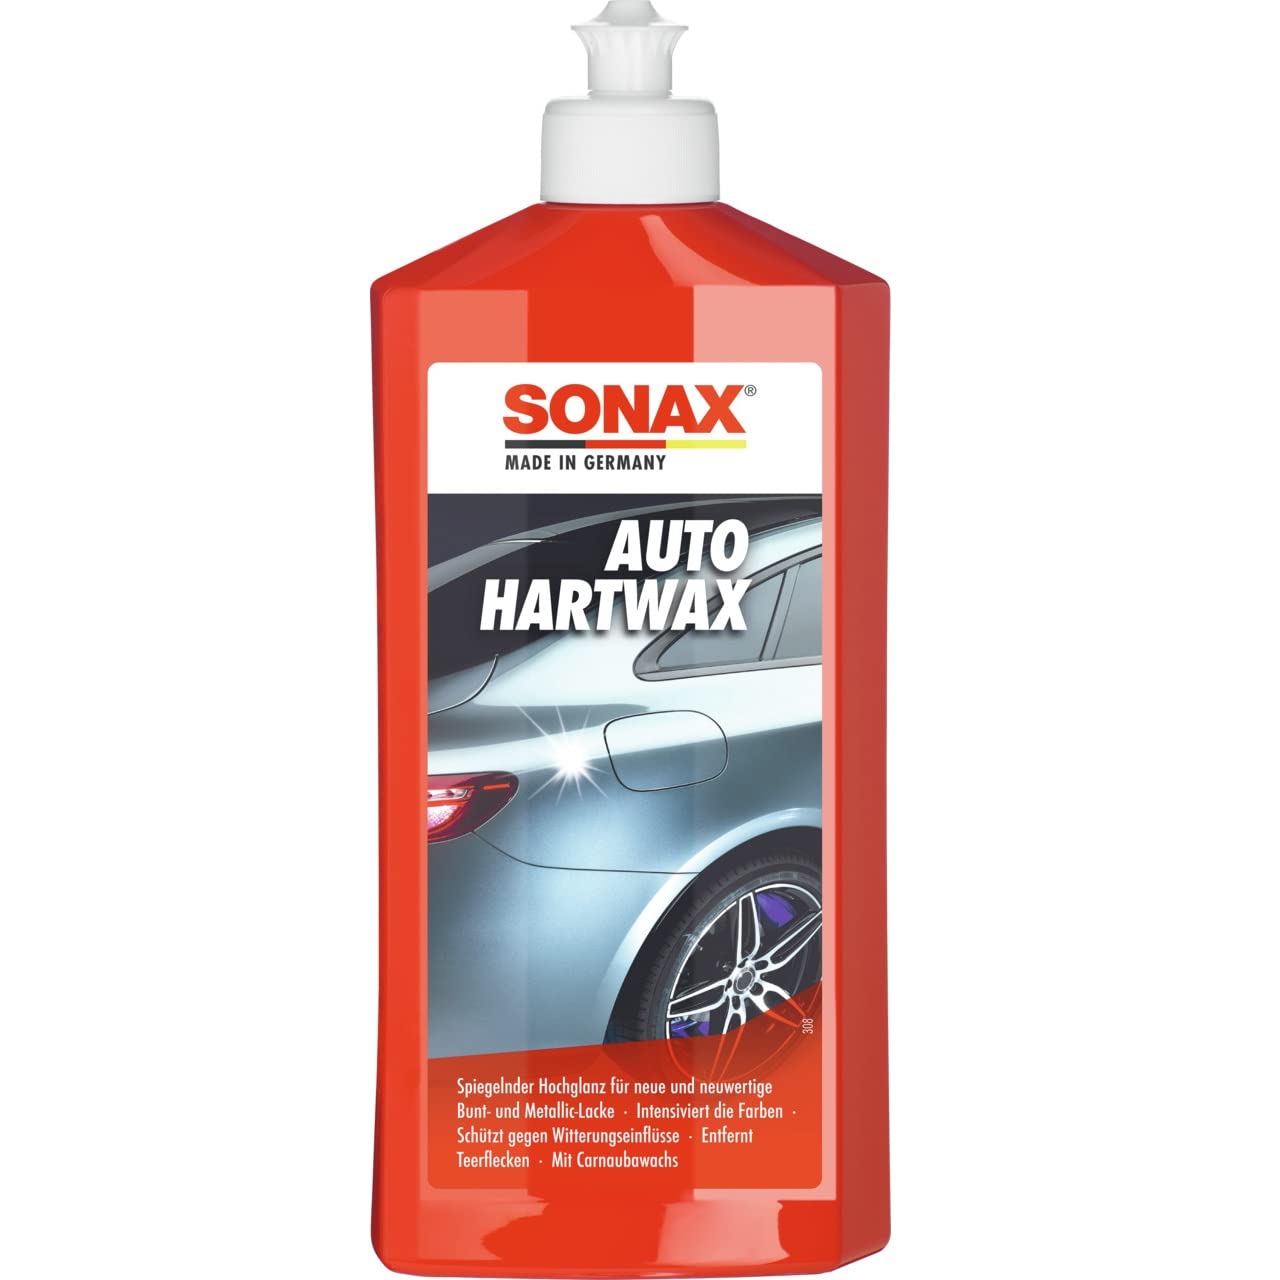 SONAX AutoHartWax (500 ml) flüssiges Hartwachs, für neue & neuwertige Bunt- & Metallic-Lacke, Art-Nr. 03012000 von SONAX